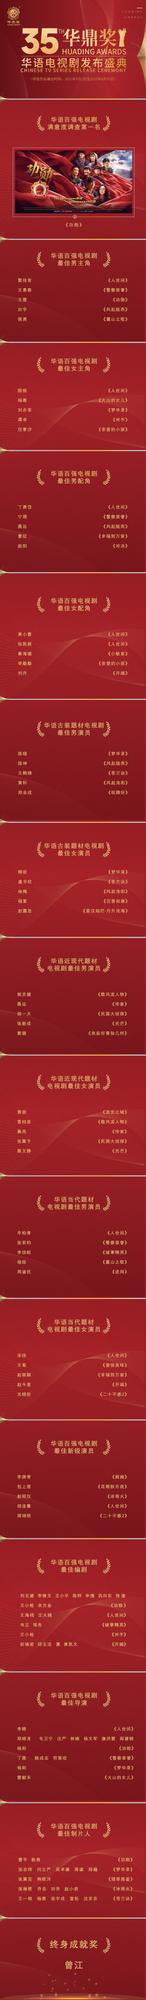 第35届华鼎奖提名名单揭晓，《人世间》荣获10项提名领跑